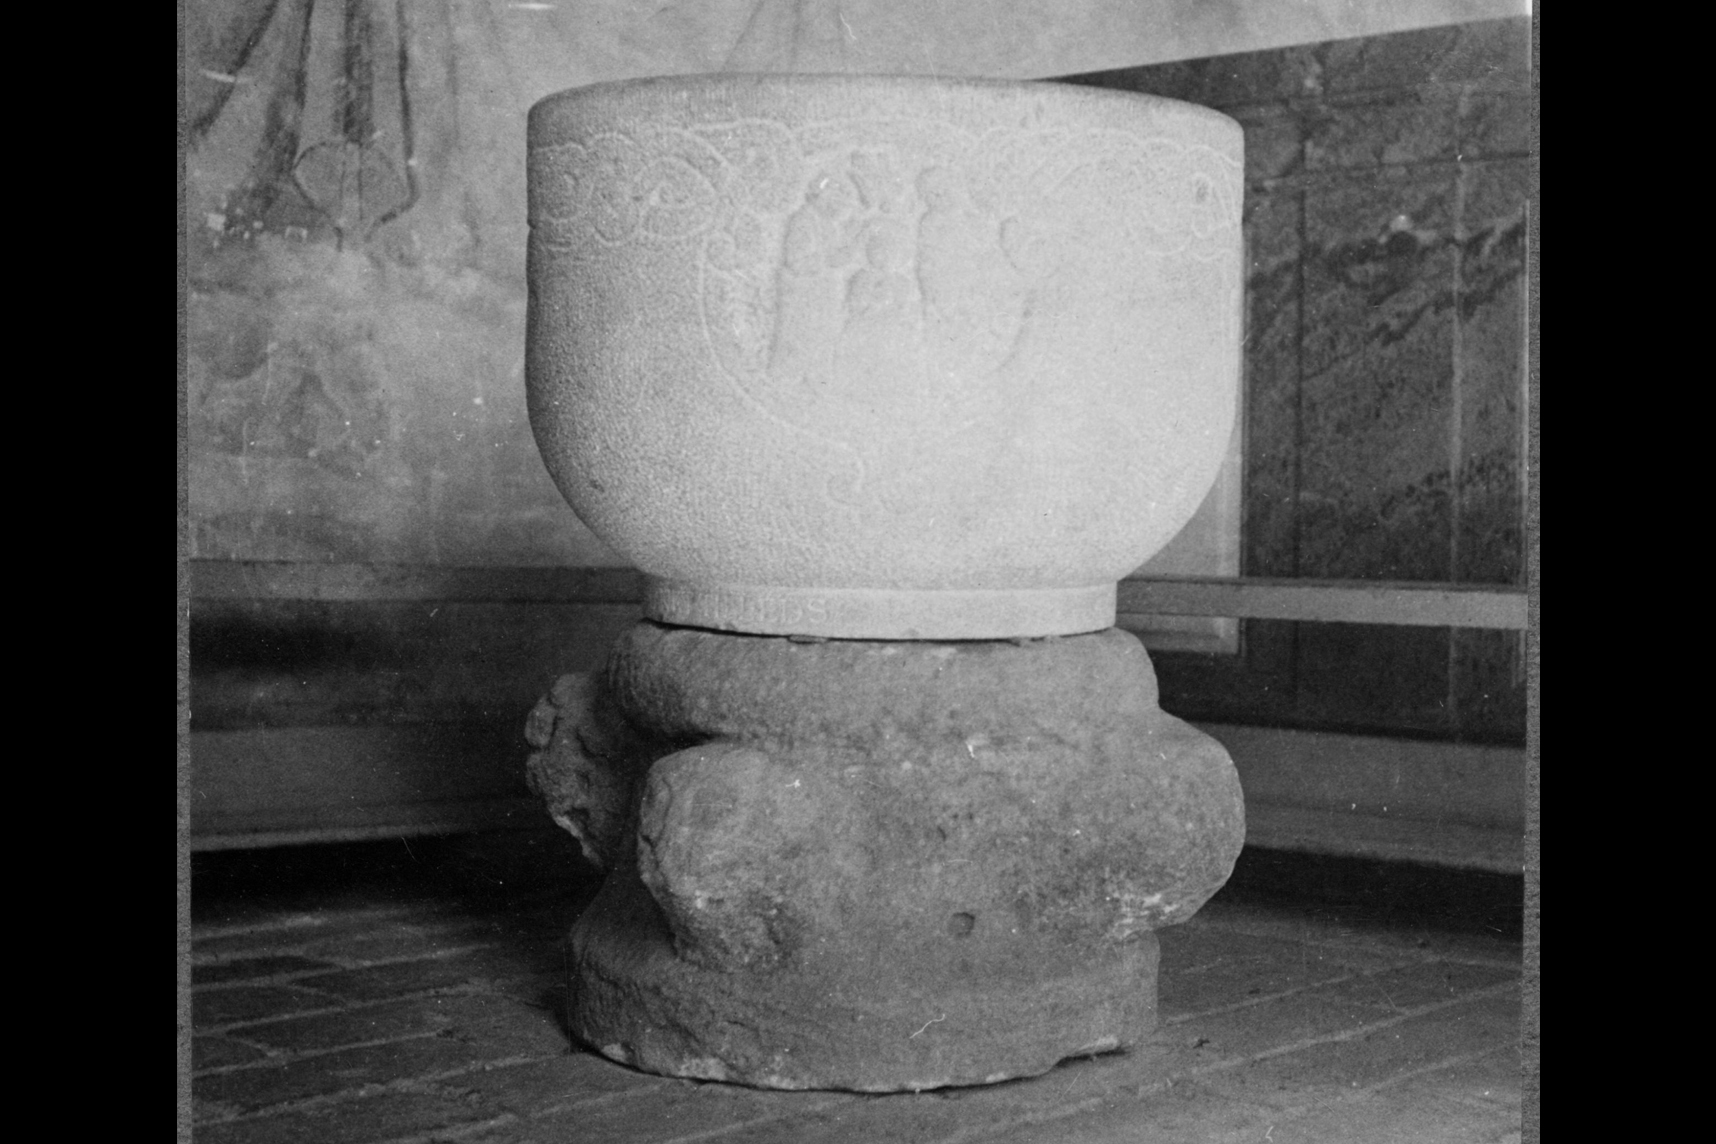 Medeltida foten med cuppa 1918 Eds kyrka Riksantikvarieämbetet bildID 3775 150 PM